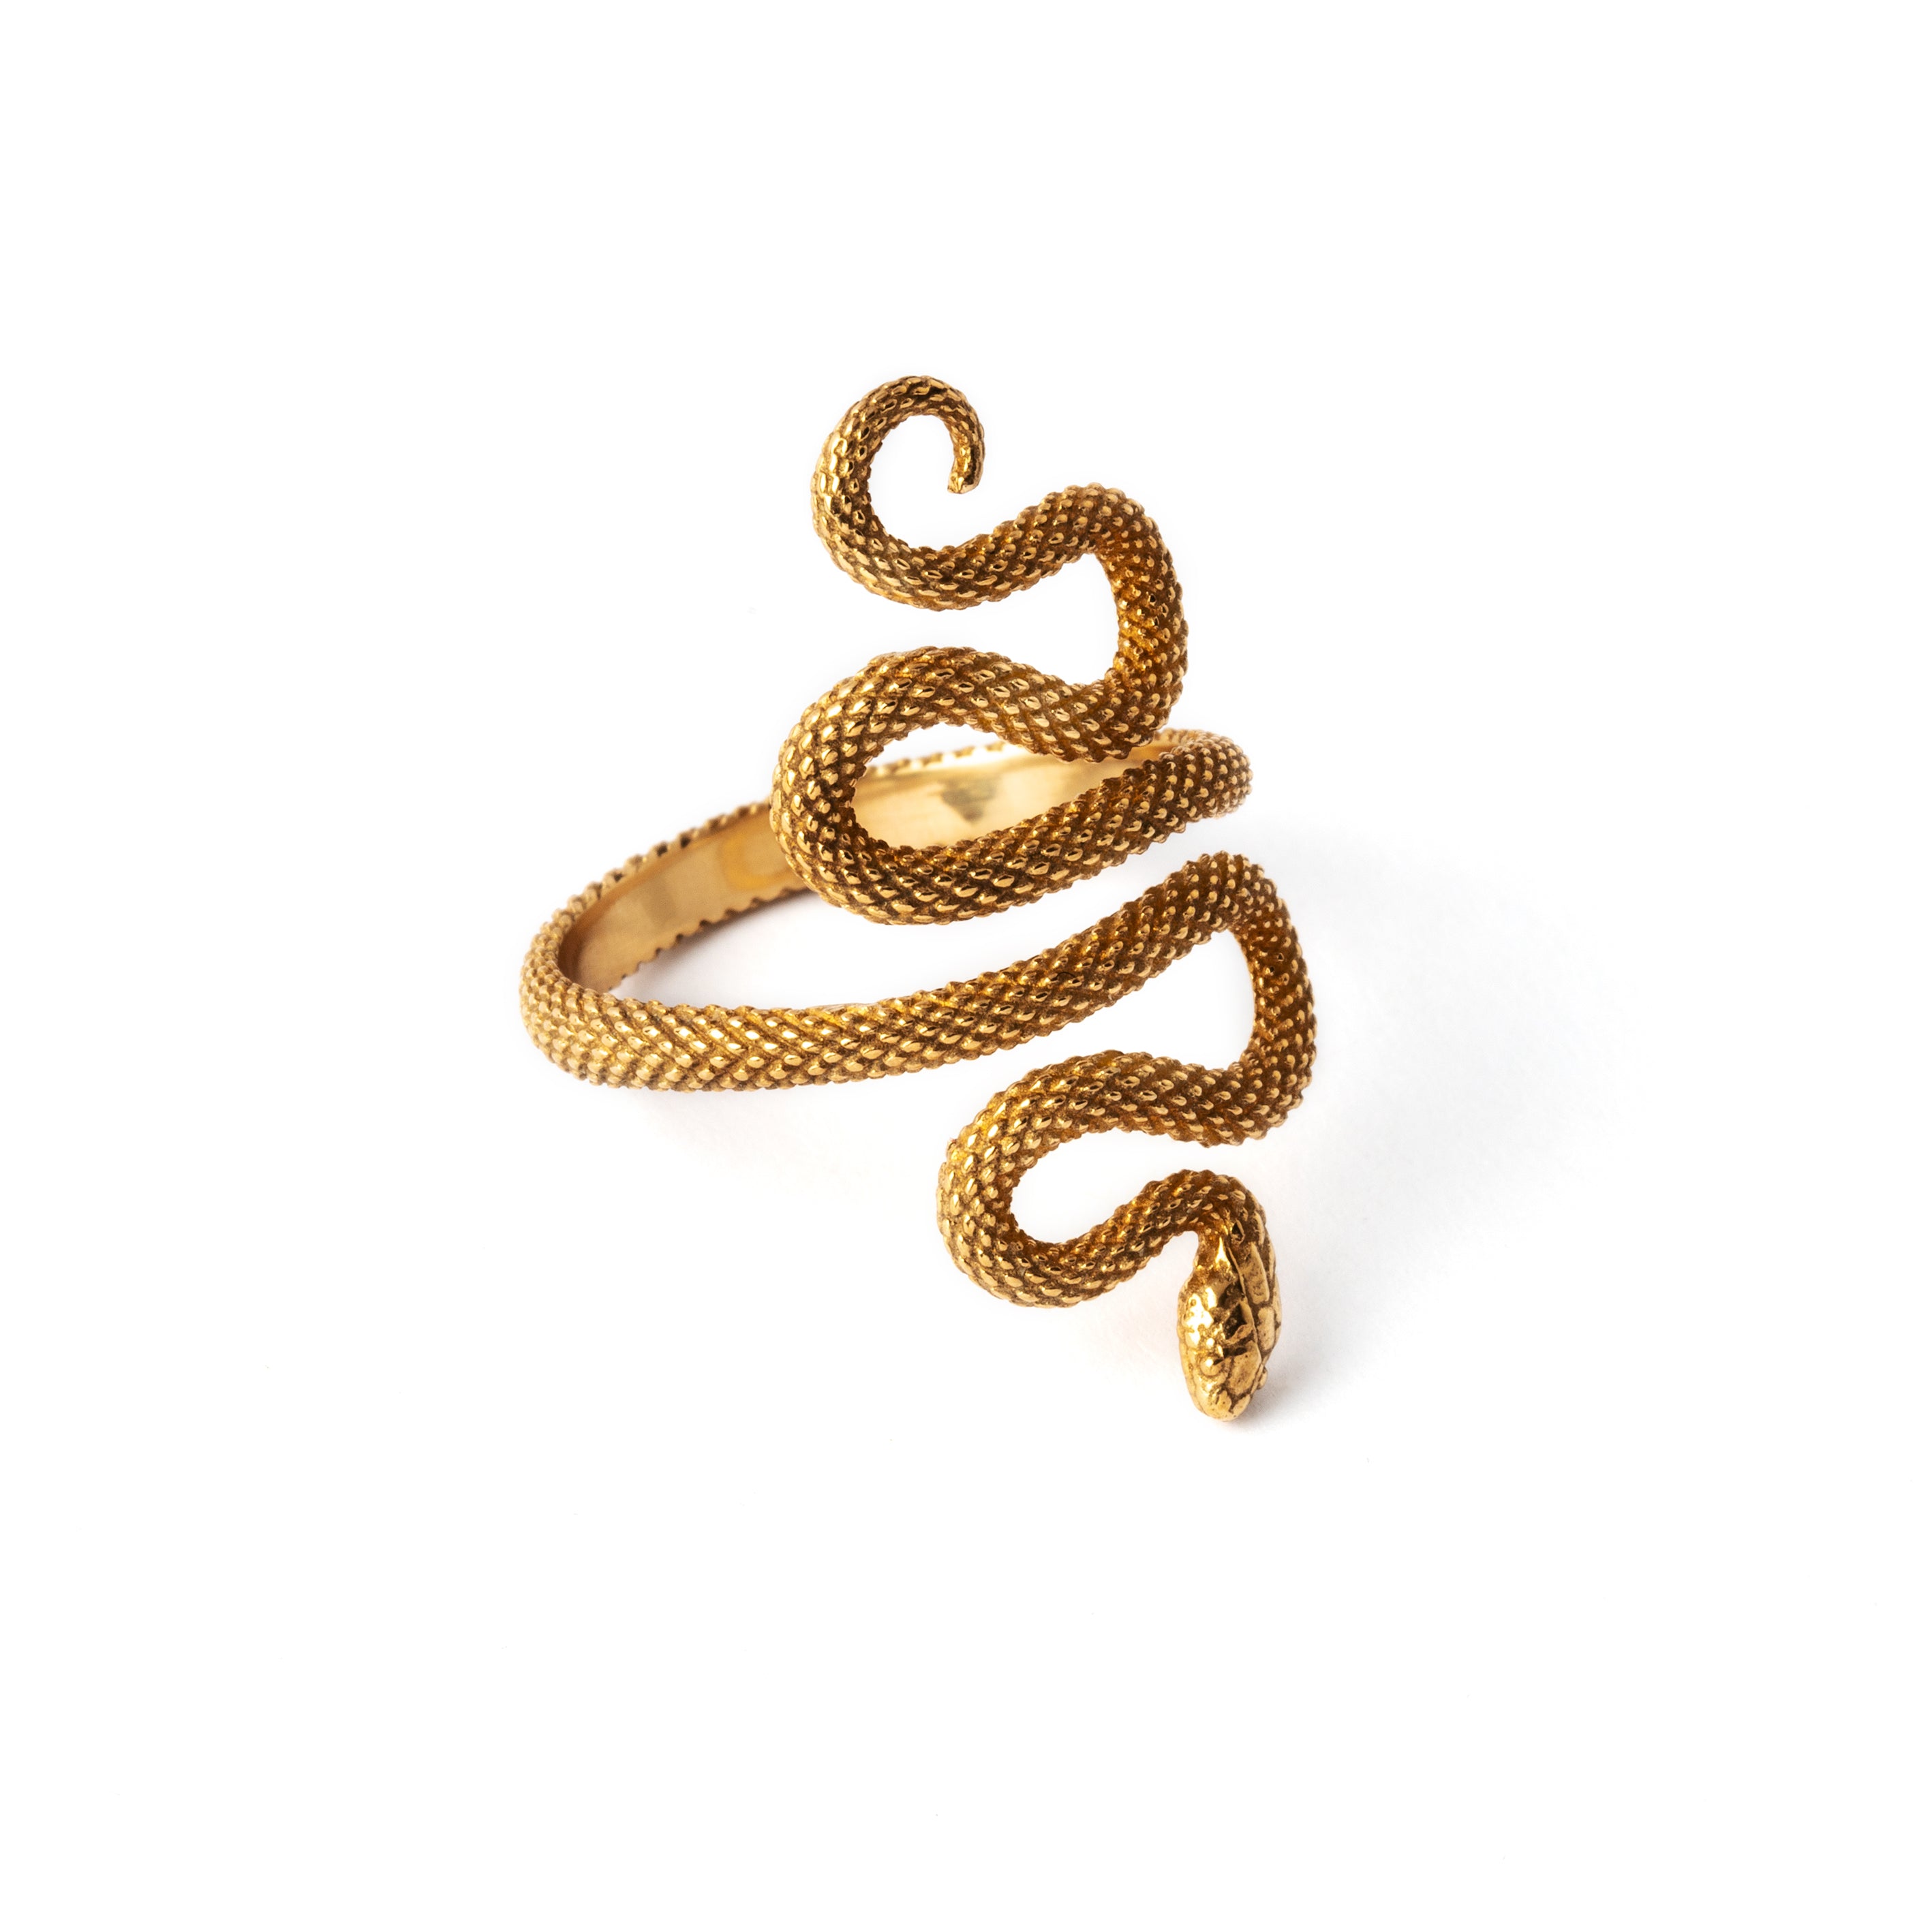 bronze Eden snake adjustable ring left side view